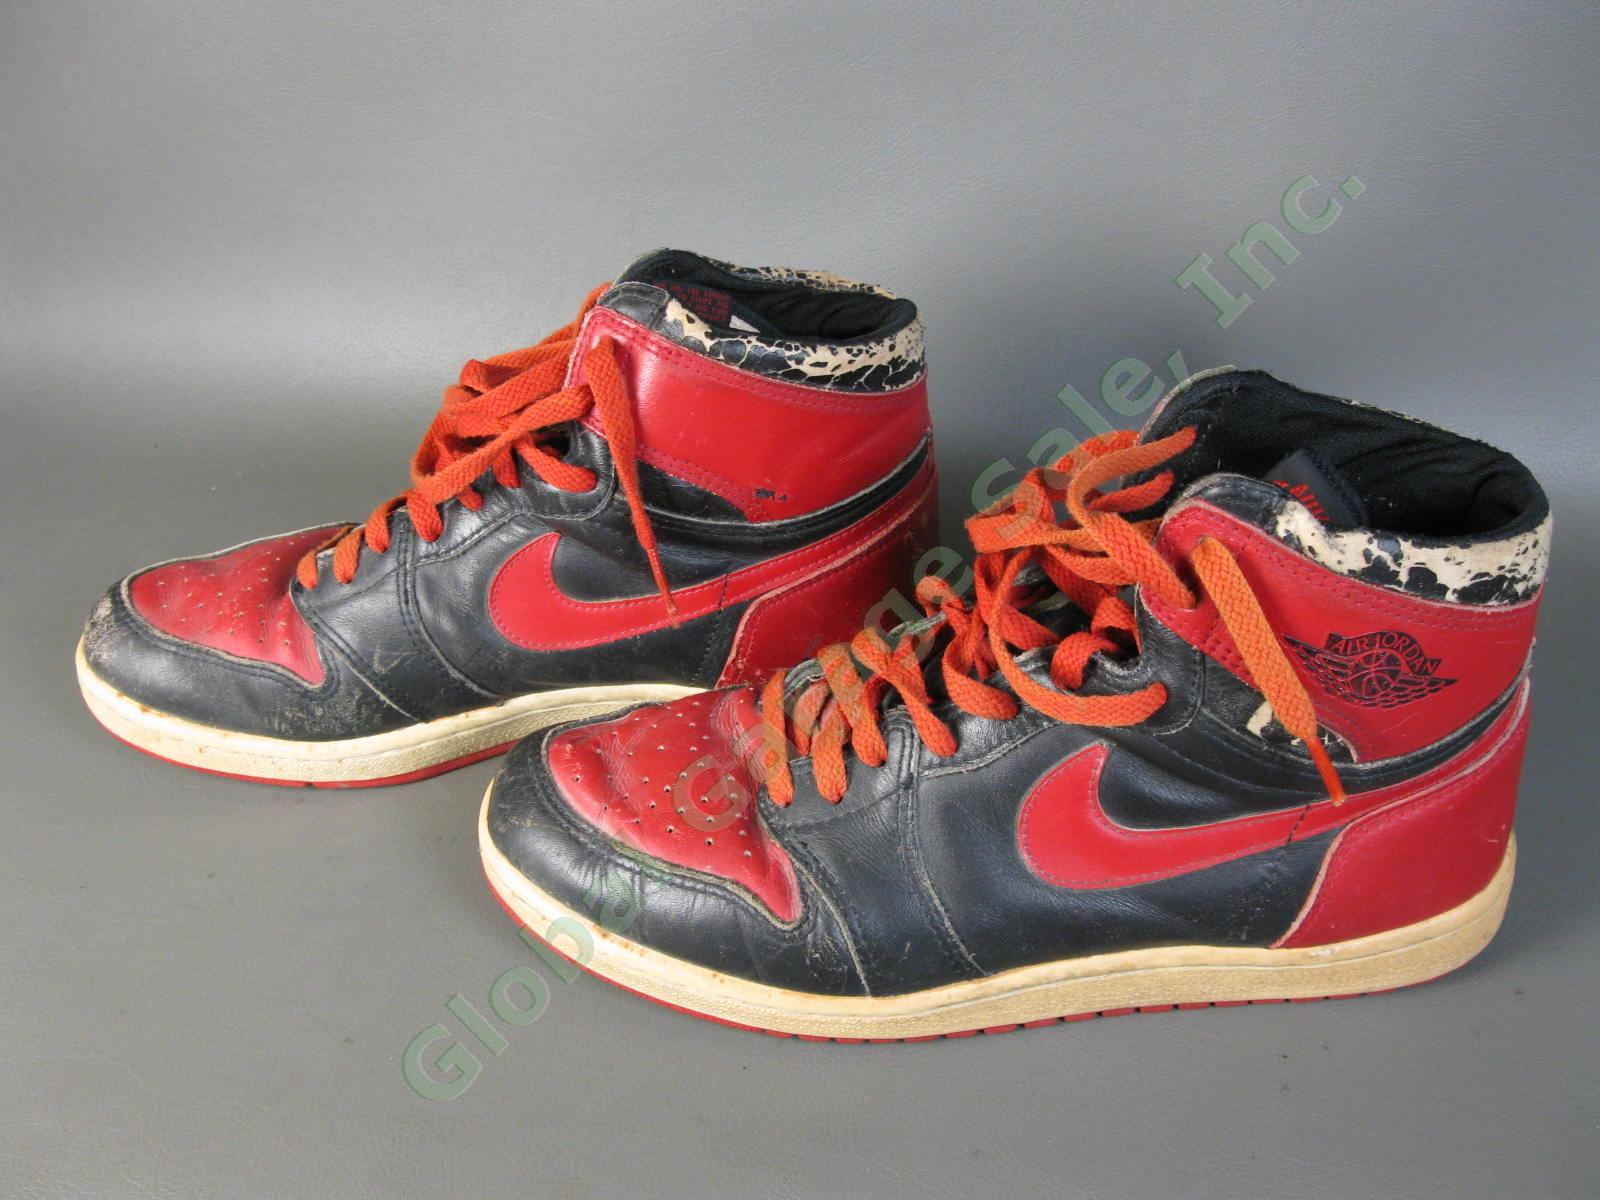 ORIGINAL 1985 Nike Air Jordan 1 Bred Black Red Chicago Bulls BANNED OG MJ AJI NR 2